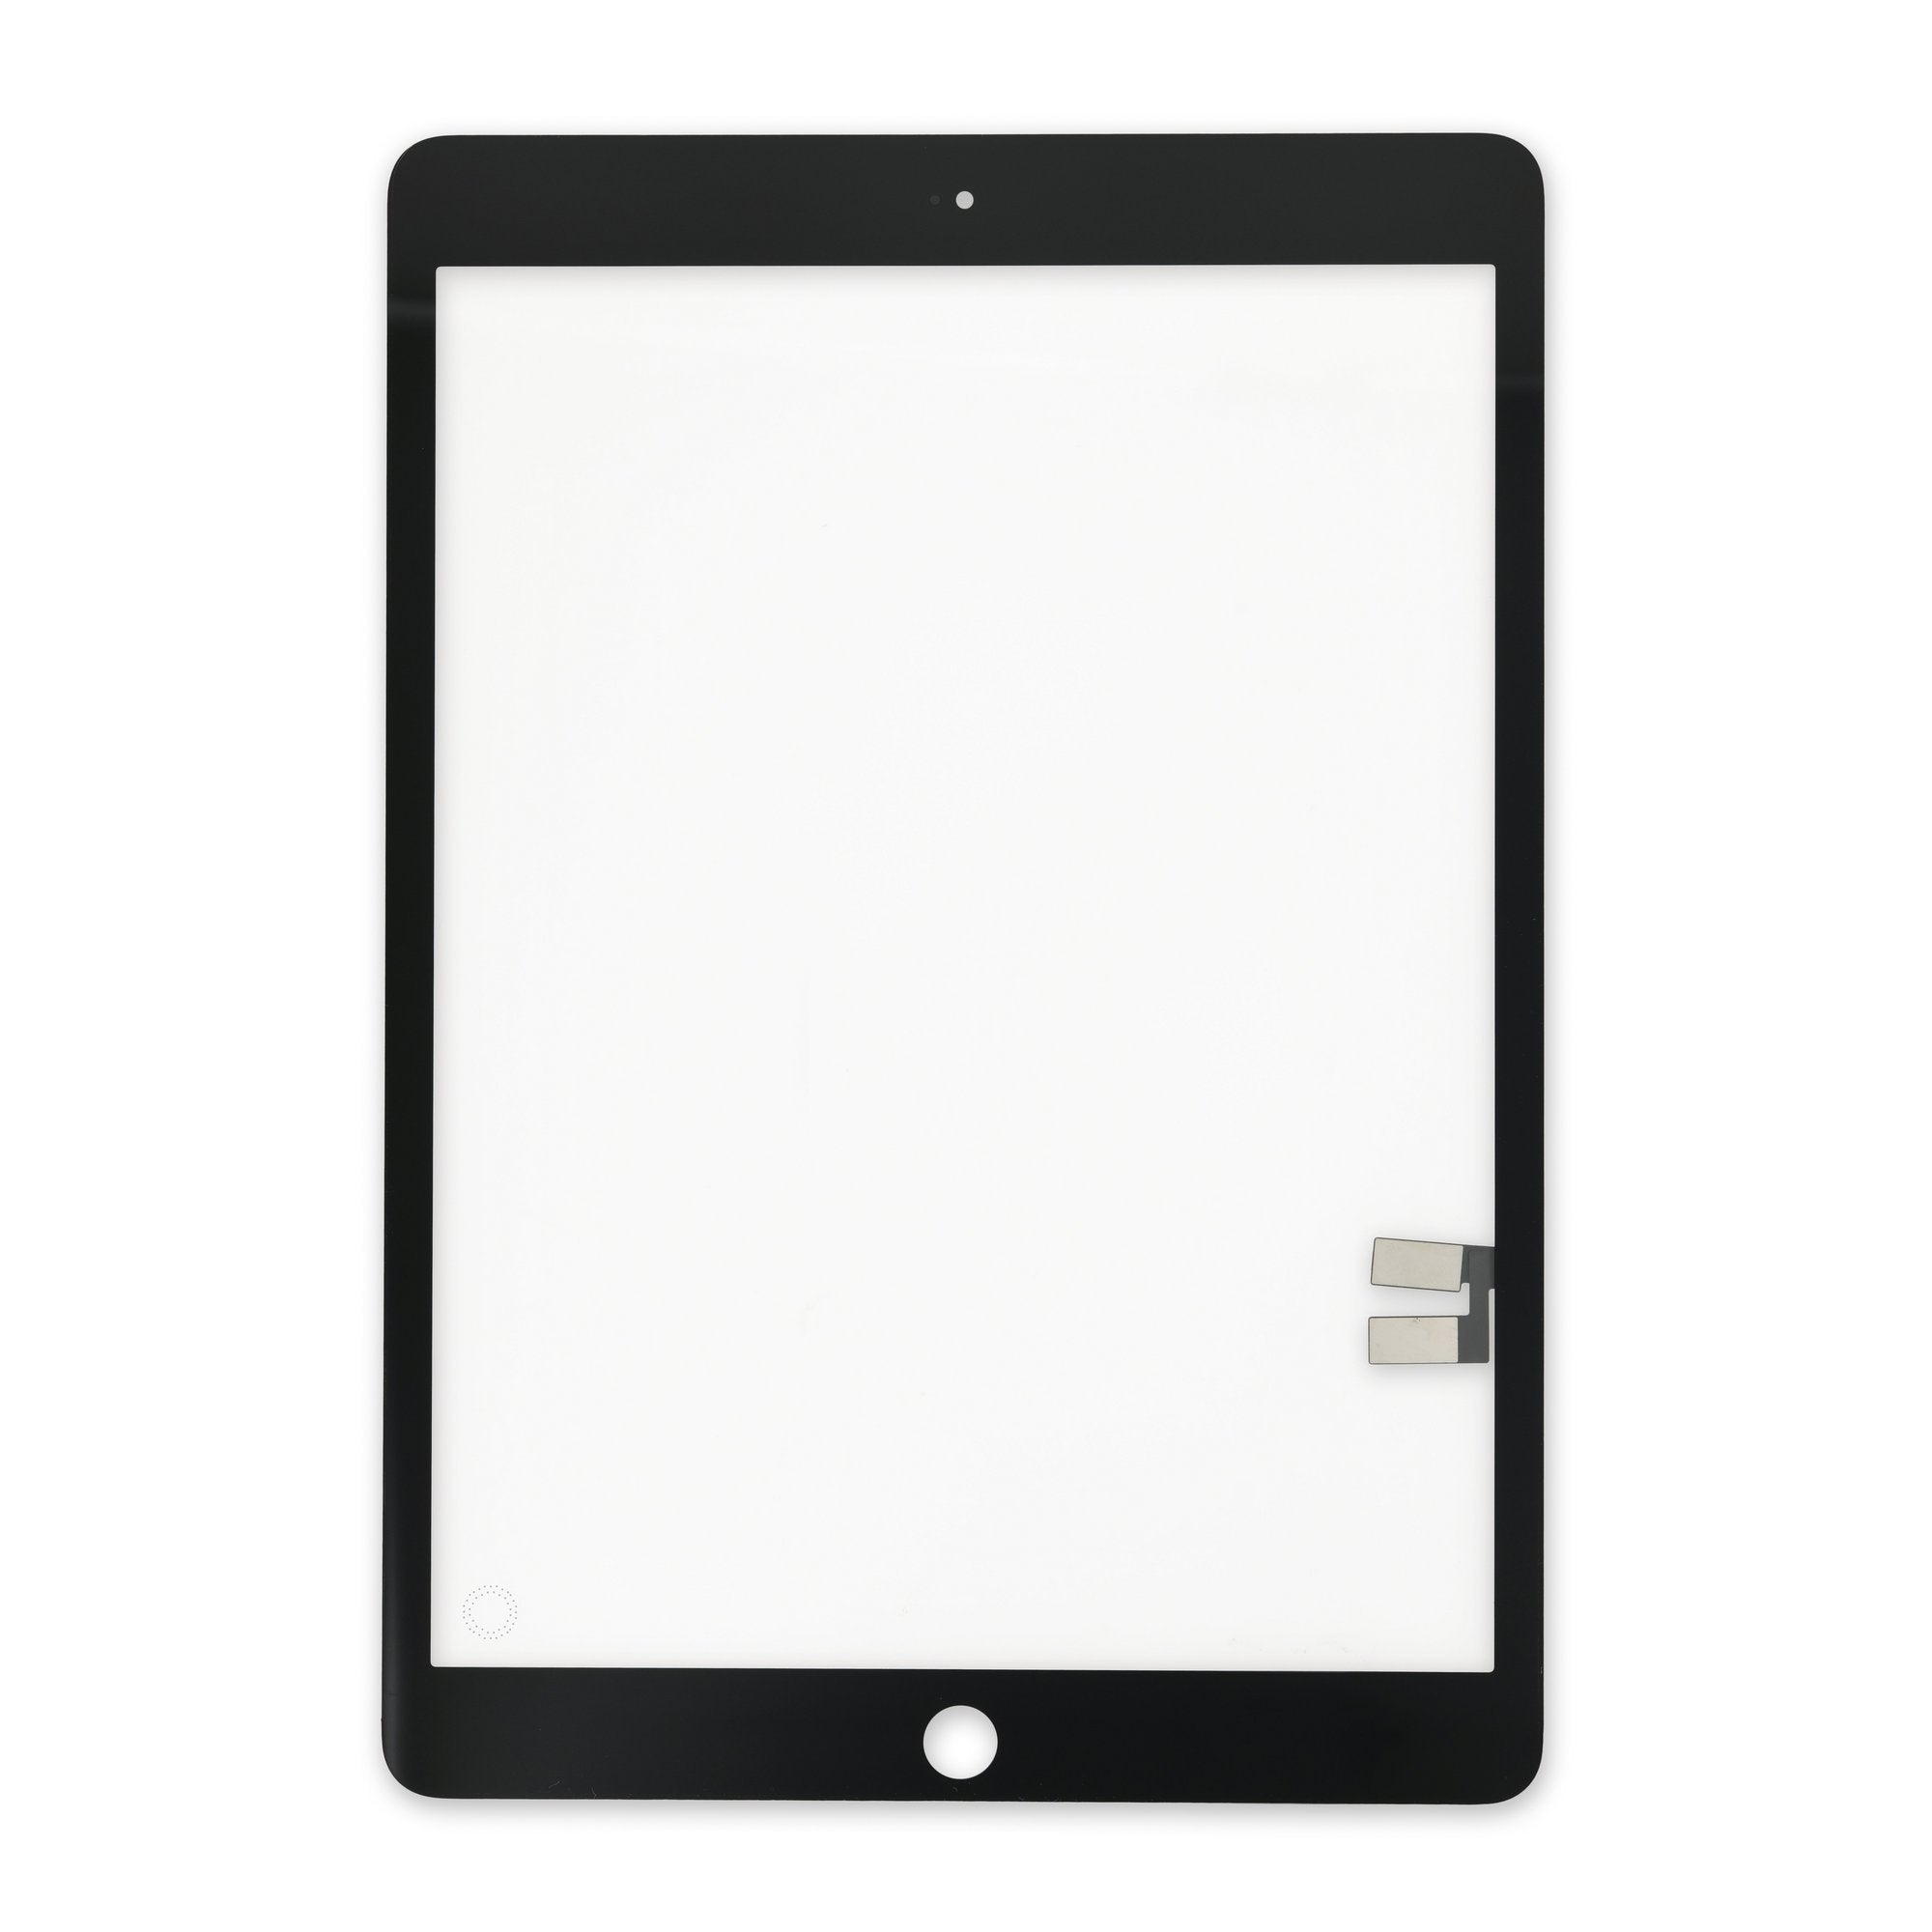 iPad 7 / iPad 8 / iPad 9 Digitizer (Premium) (White) – Mobile Active